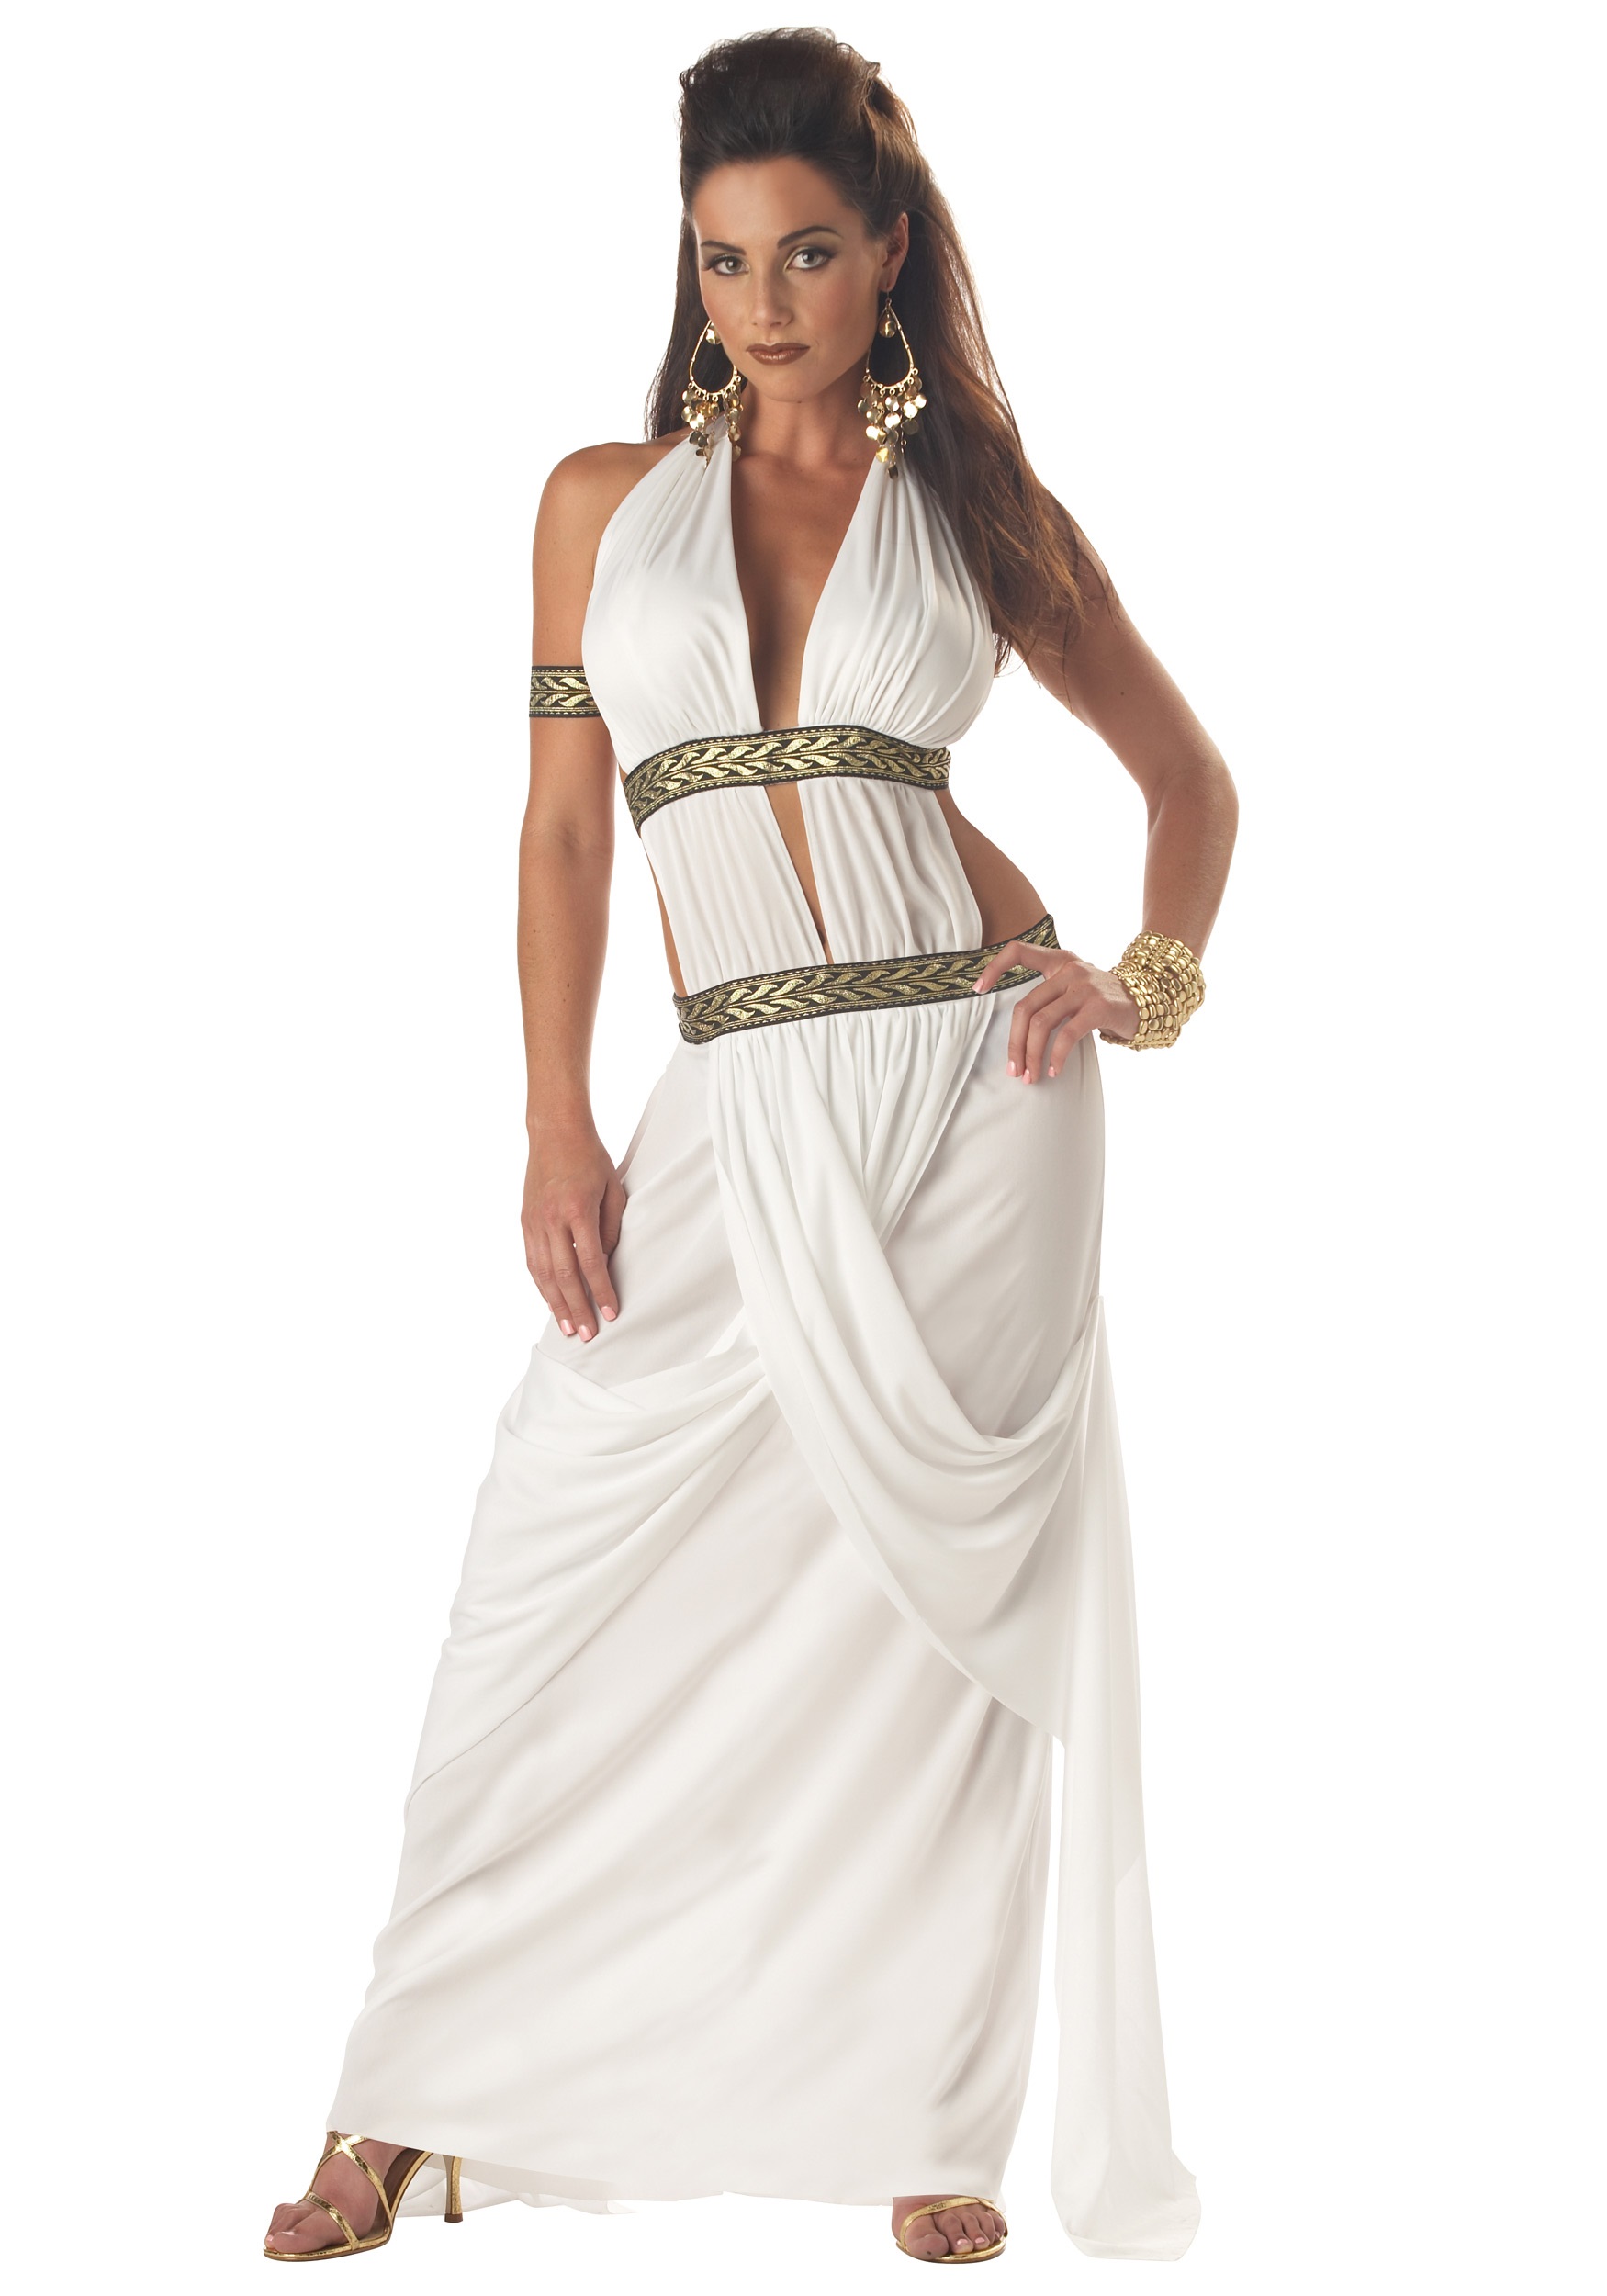 Spartan Queen Costume  , Ancient Greek Costume